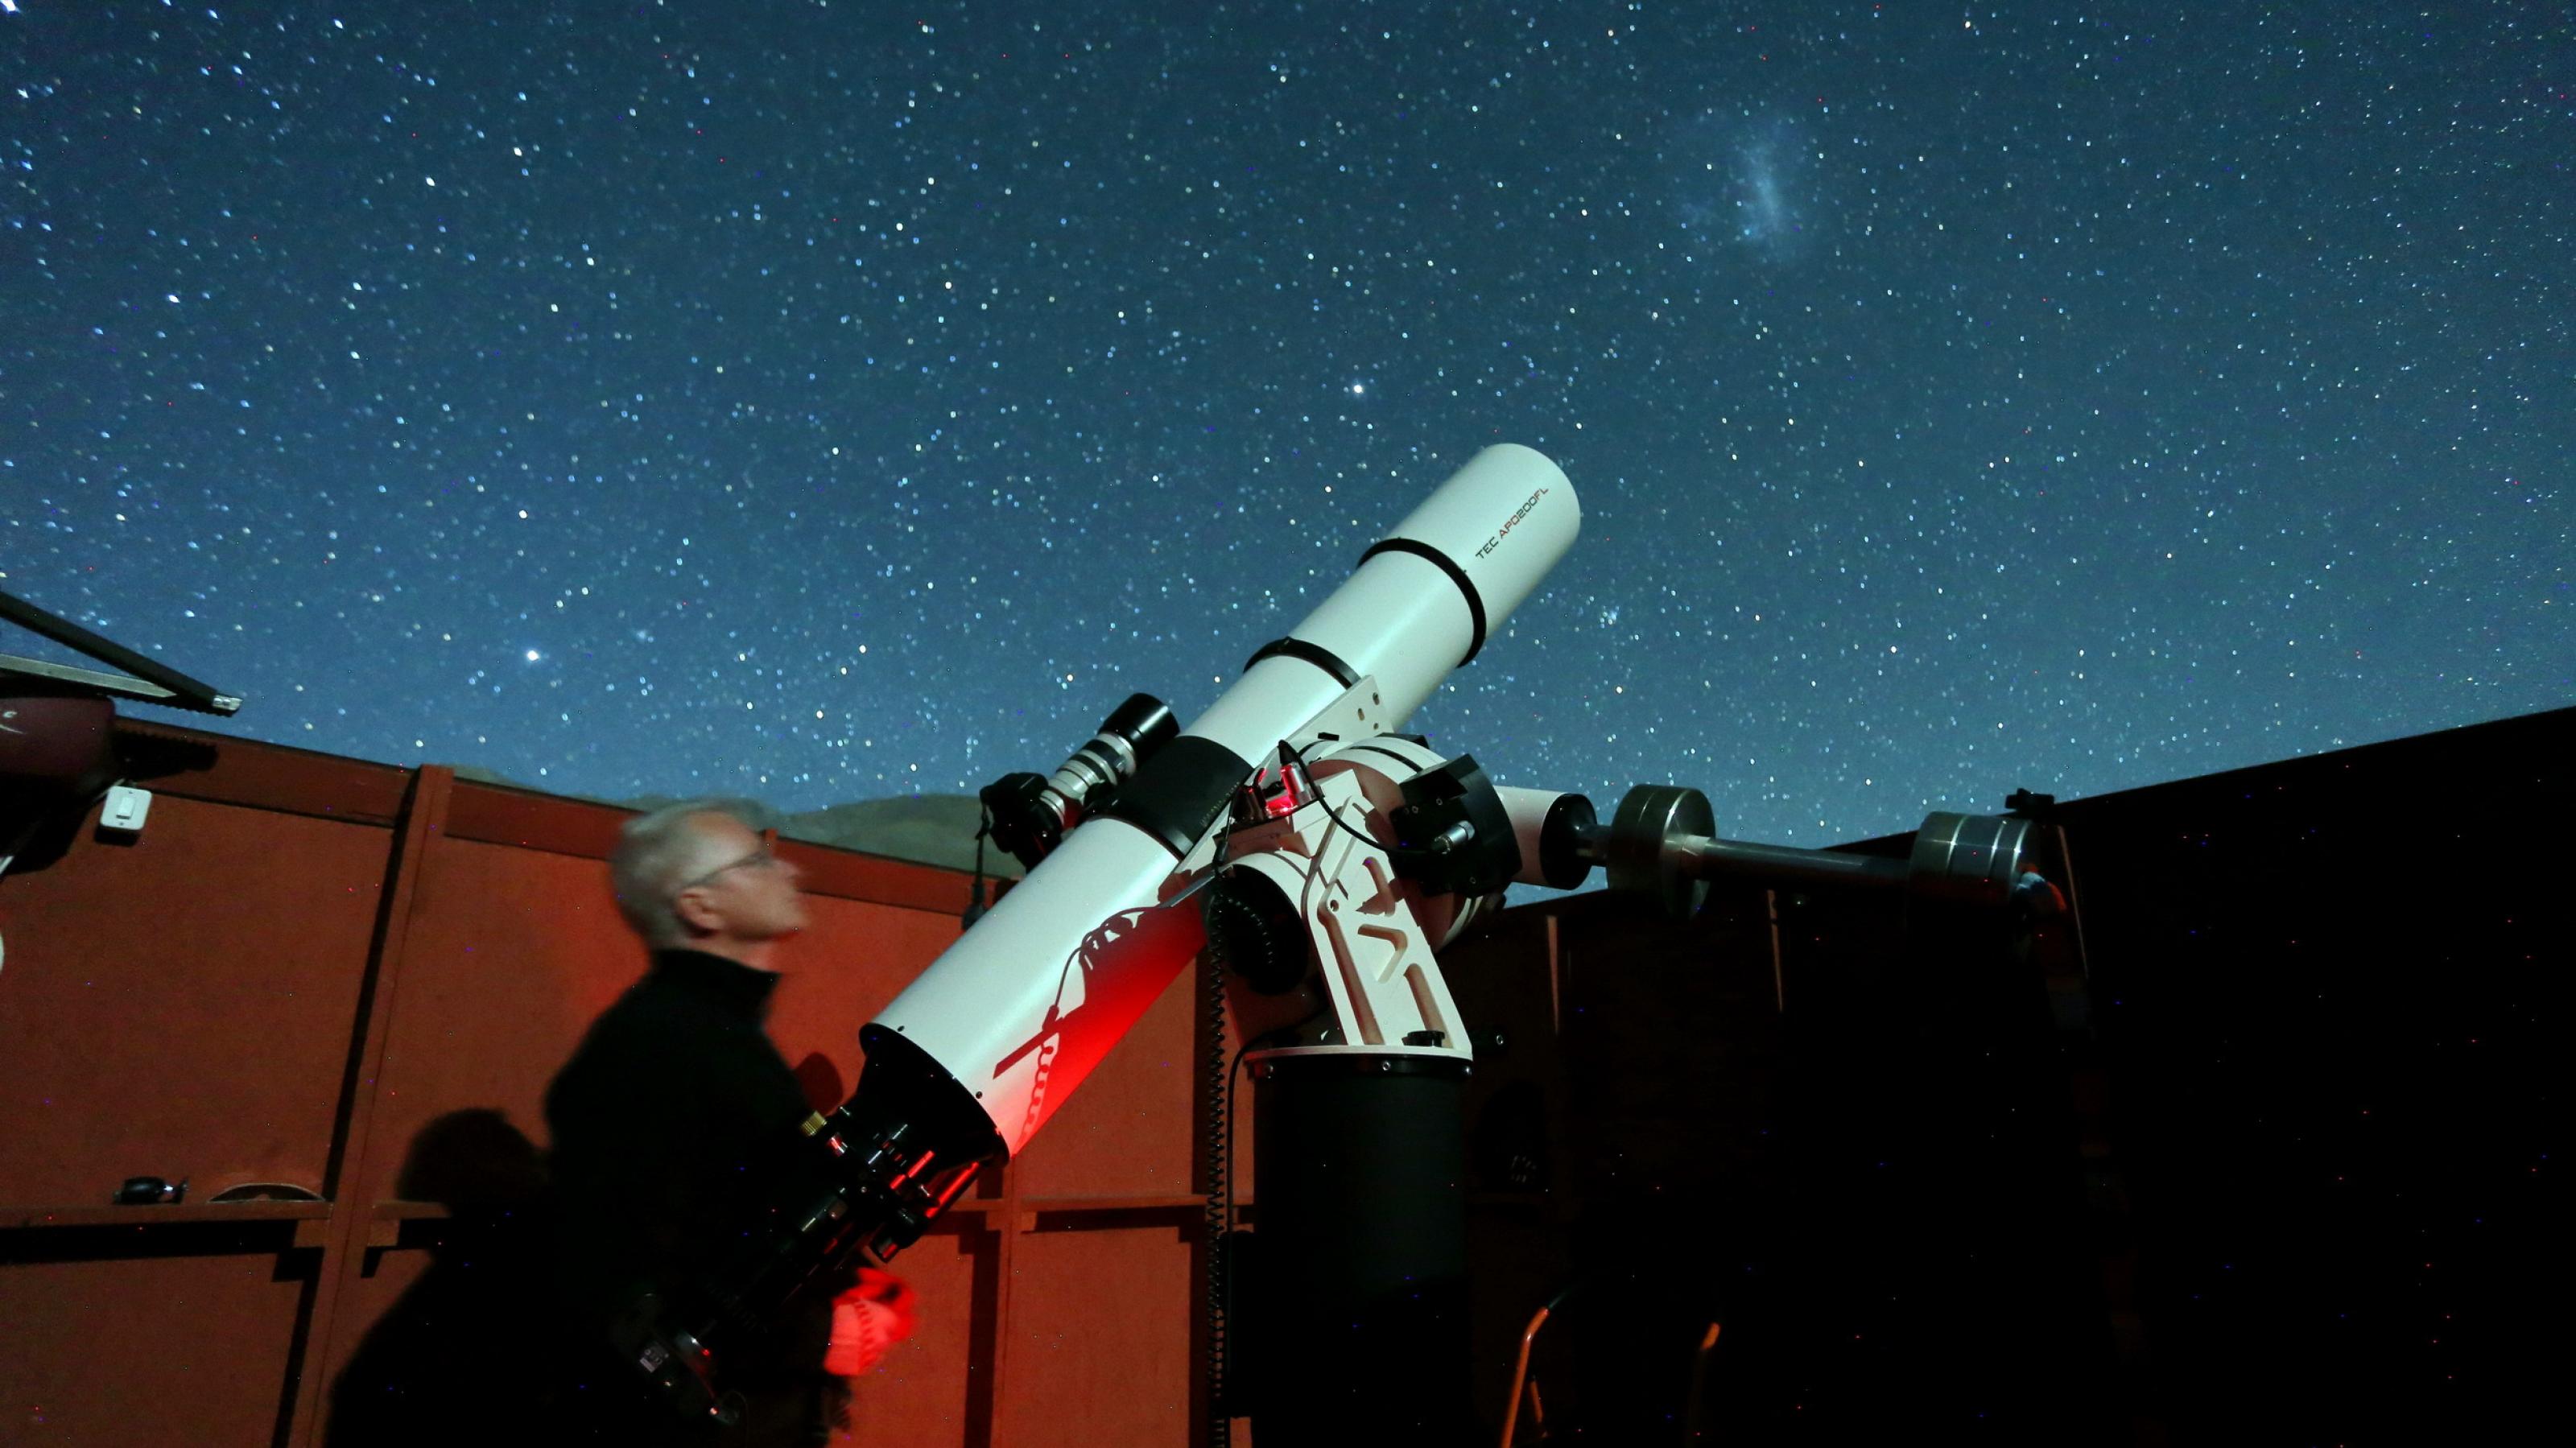 Ein Mann steht neben einem großen Fernrohr in einer Schutzhütte mit geöffnetem Dach und fotografiert den nächtlichen Sternenhimmel